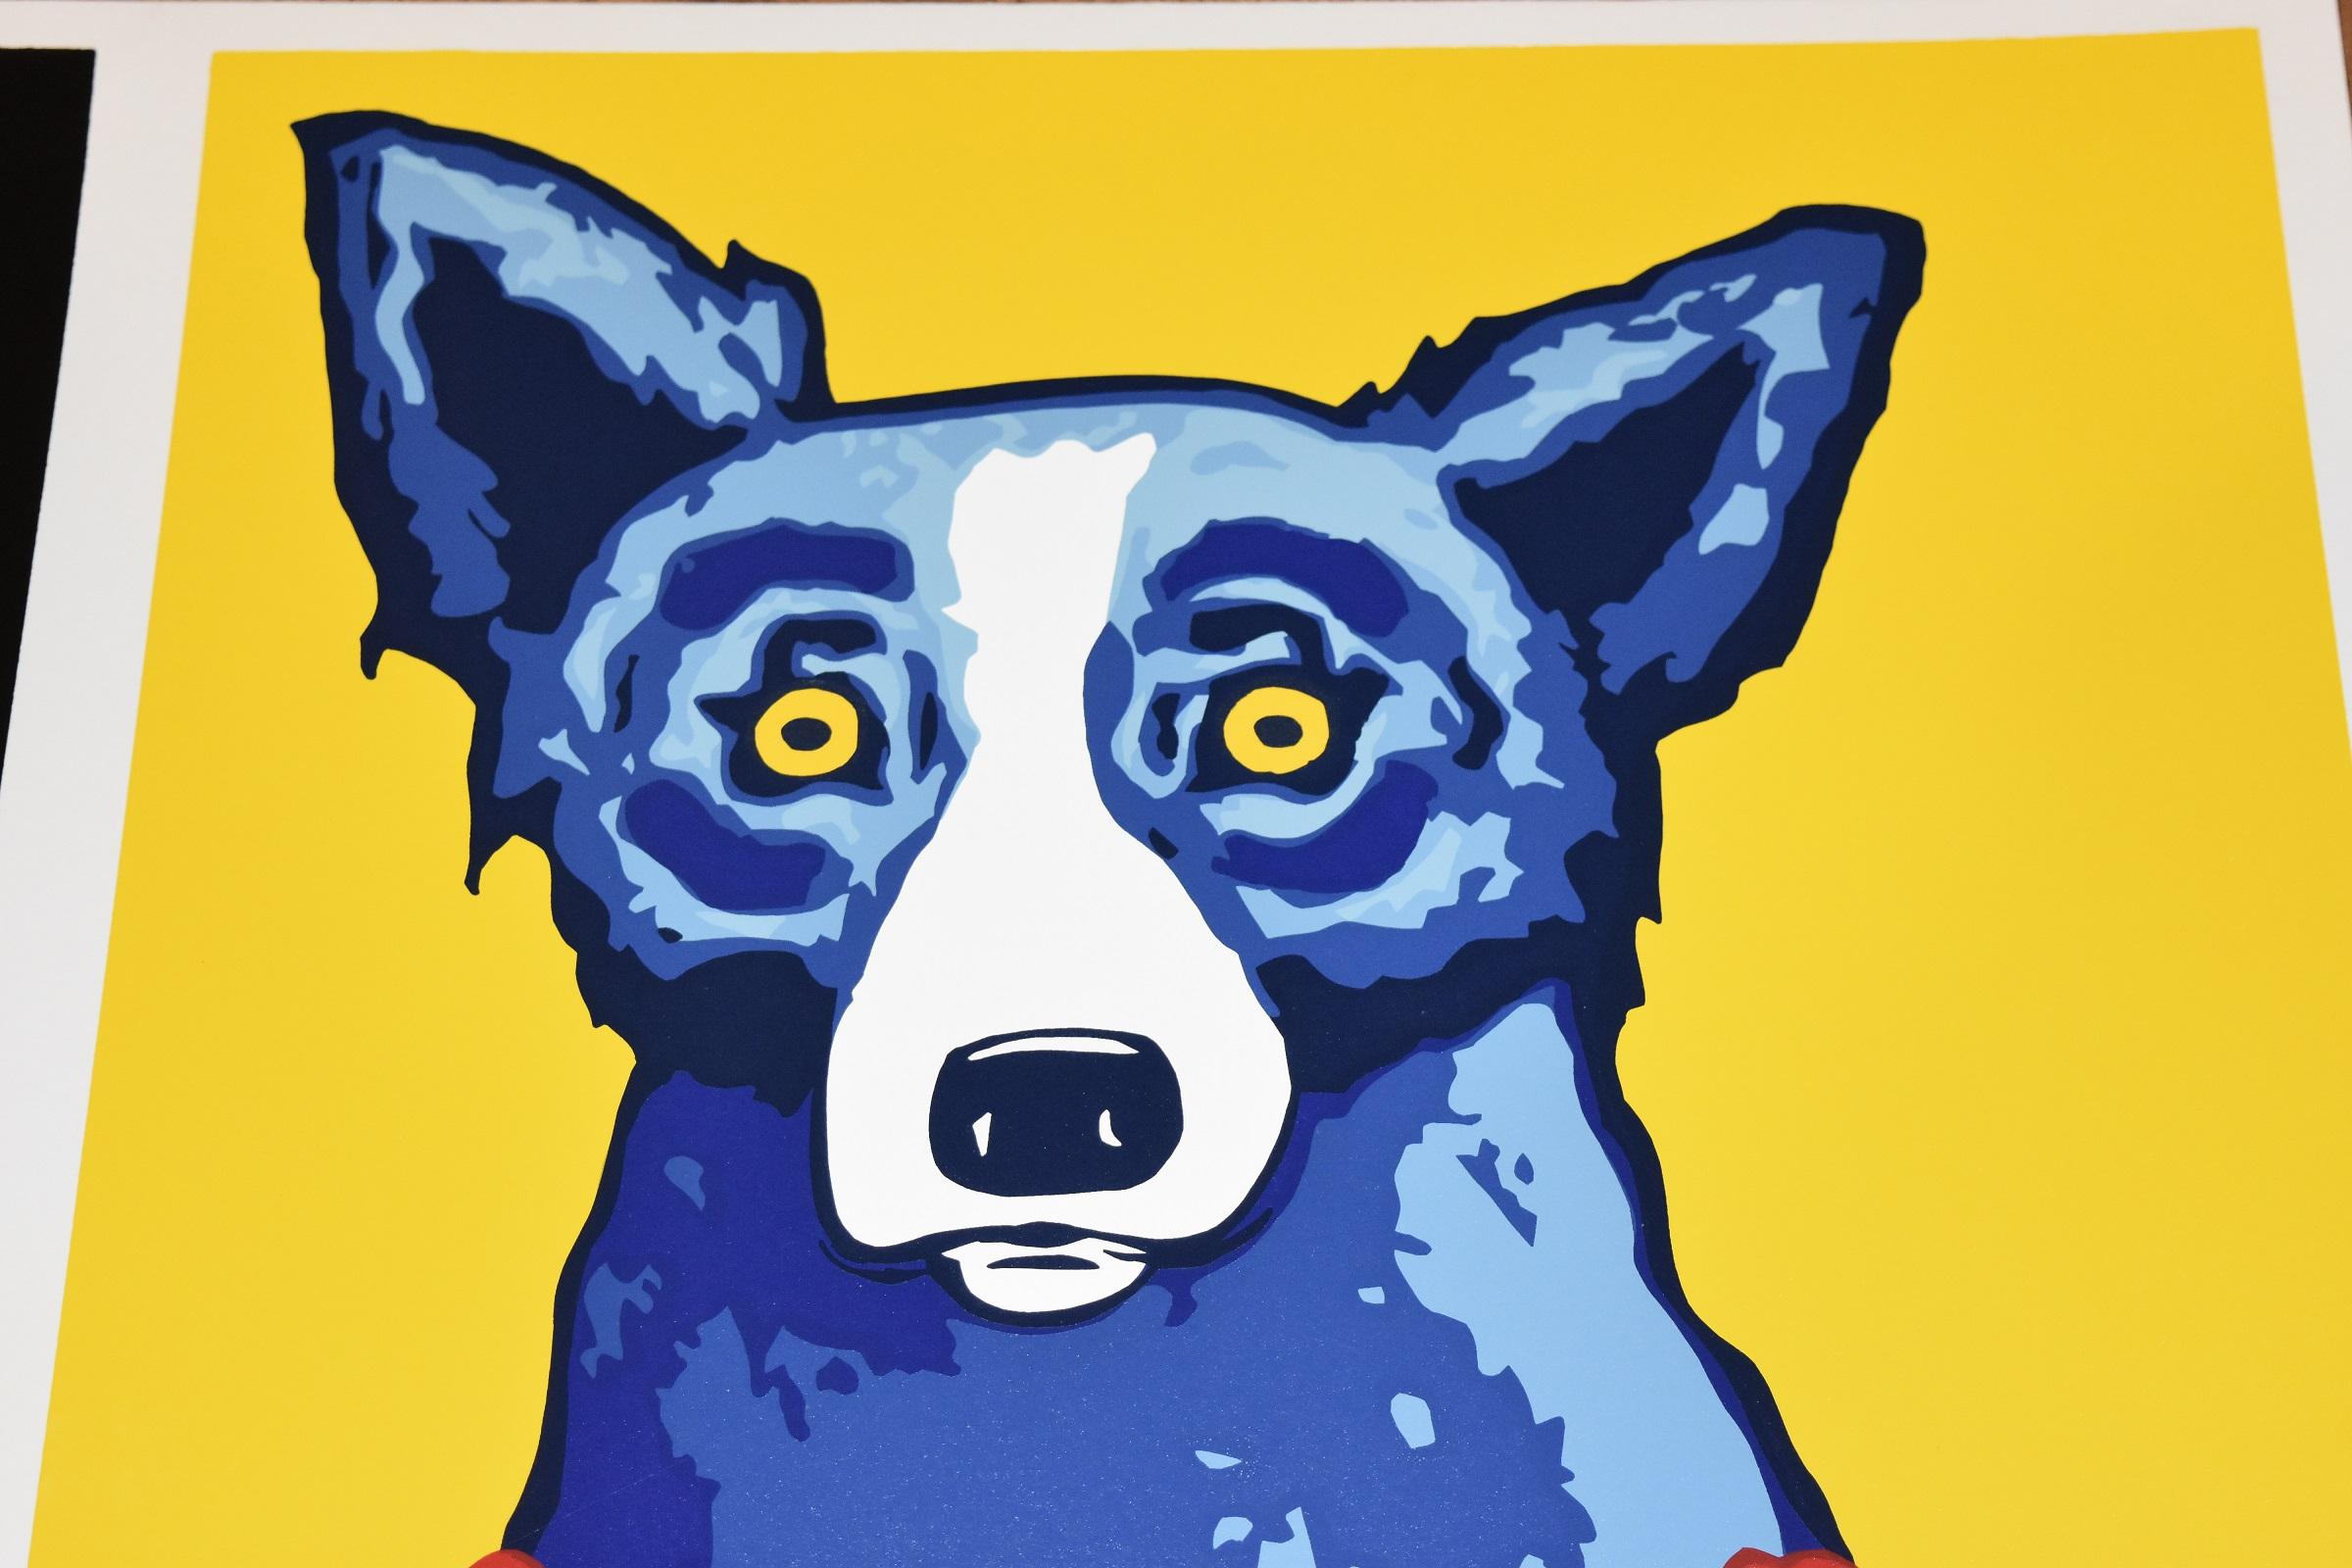 Das Werk Blue Dog besteht aus einem schwarzen Hintergrund mit einem blauen Bären mit gefühlvollen gelben Augen, der mit gelben Blumen geschmückt ist, und einem gelben Hintergrund mit einem blauen Hund mit gefühlvollen gelben Augen, der mit roten